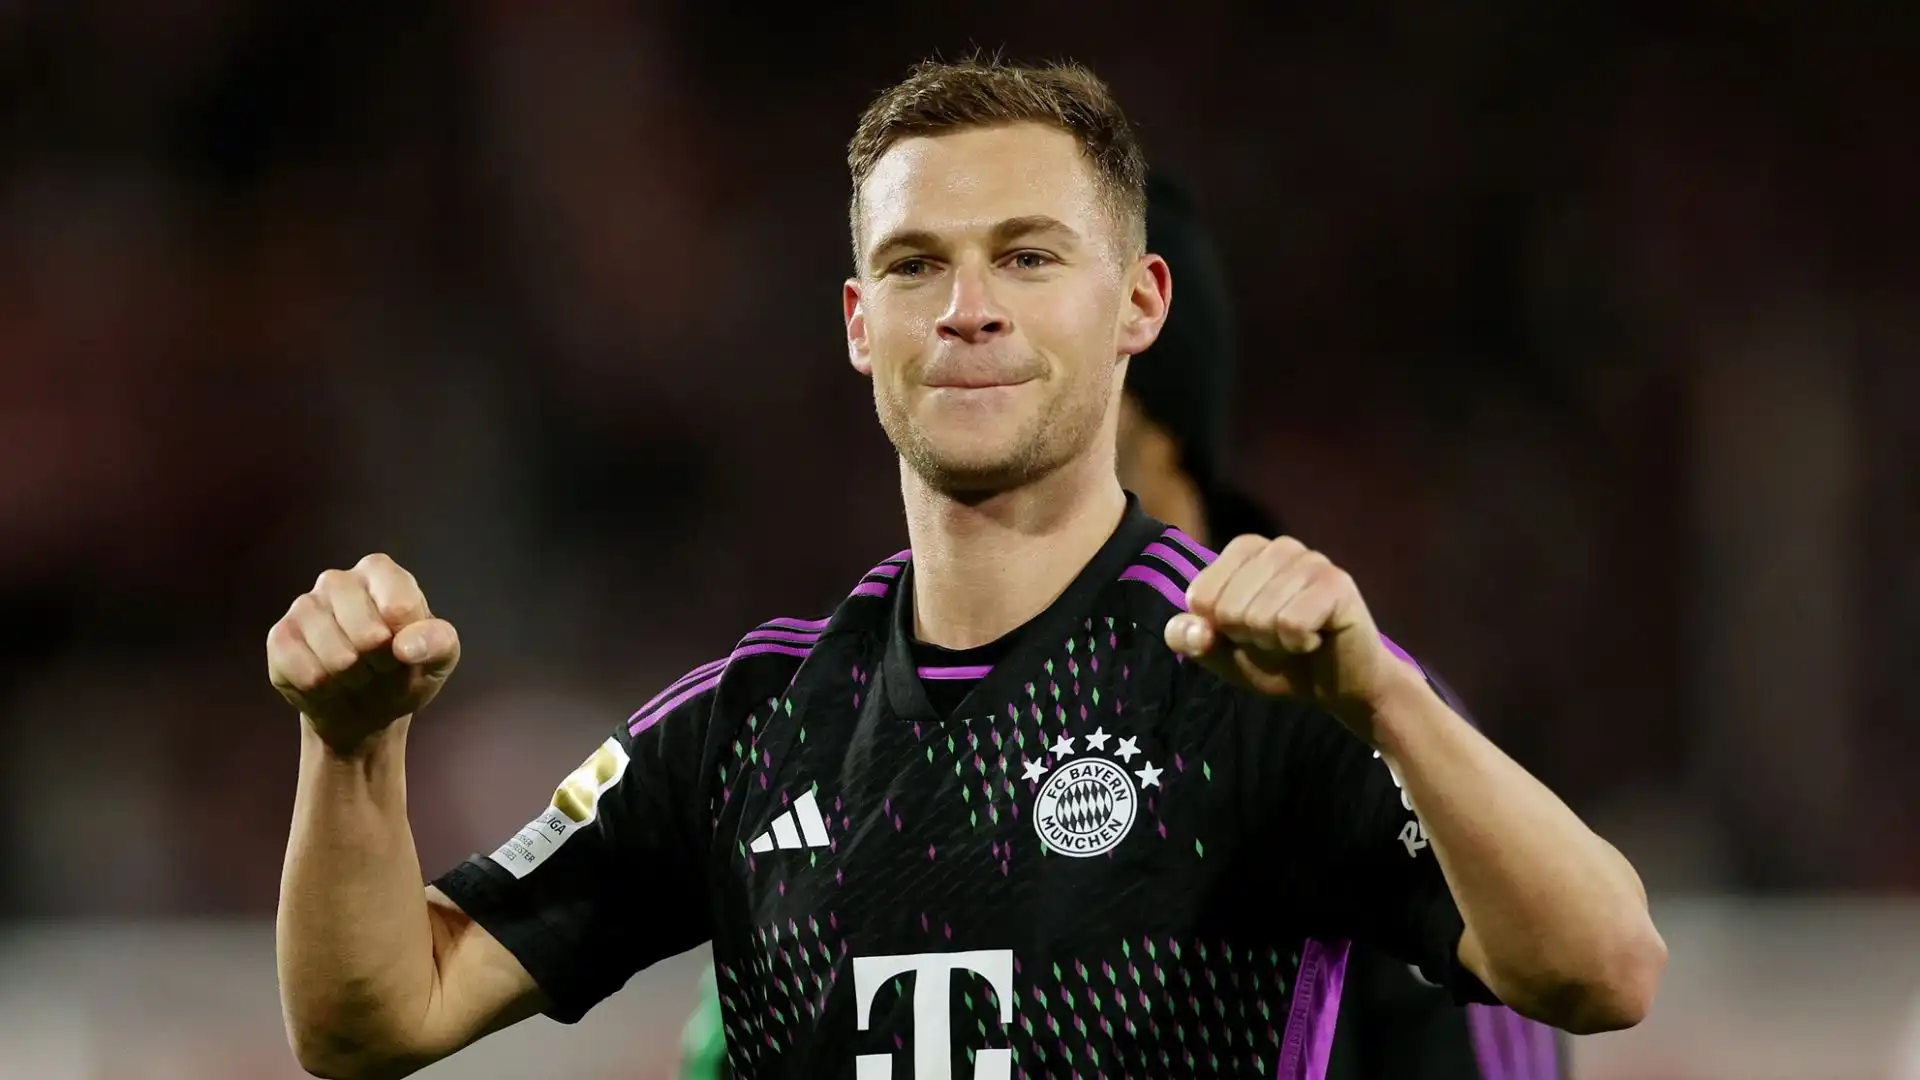 "Il legame di Joshua con il Bayern è fortissimo, è una questione di cuore", ha assicurato Reschke a Sky